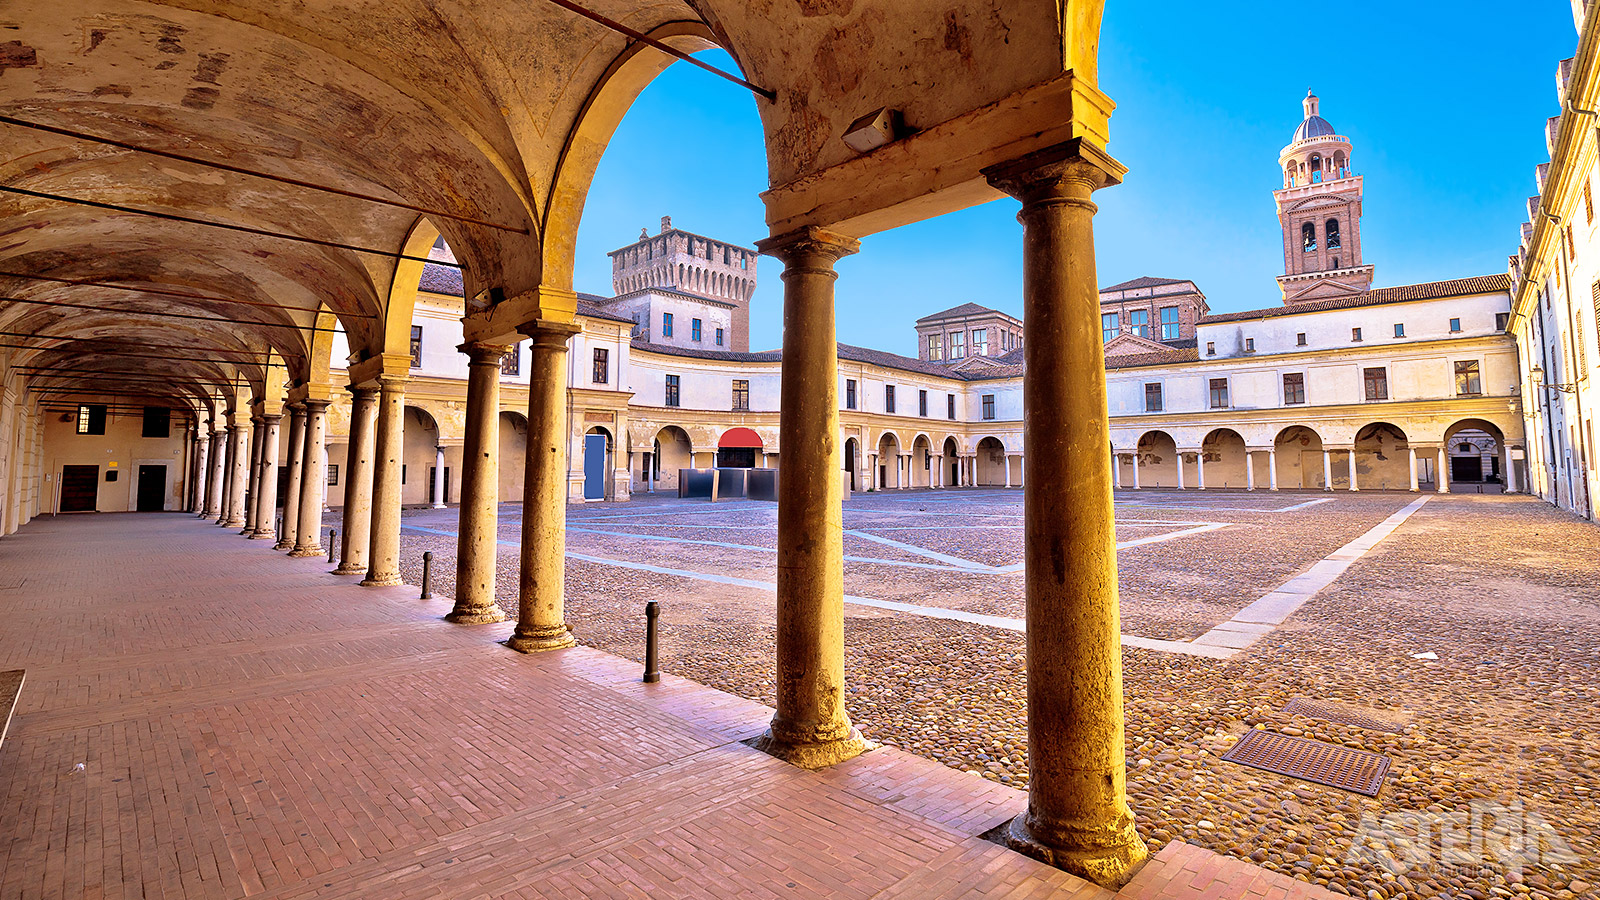 Wanneer je door smalle steegjes en onder de verschillende bogen van Mantova loopt, ontdek je tal van palazzi, kerken, binnenplaatsen en standbeelden